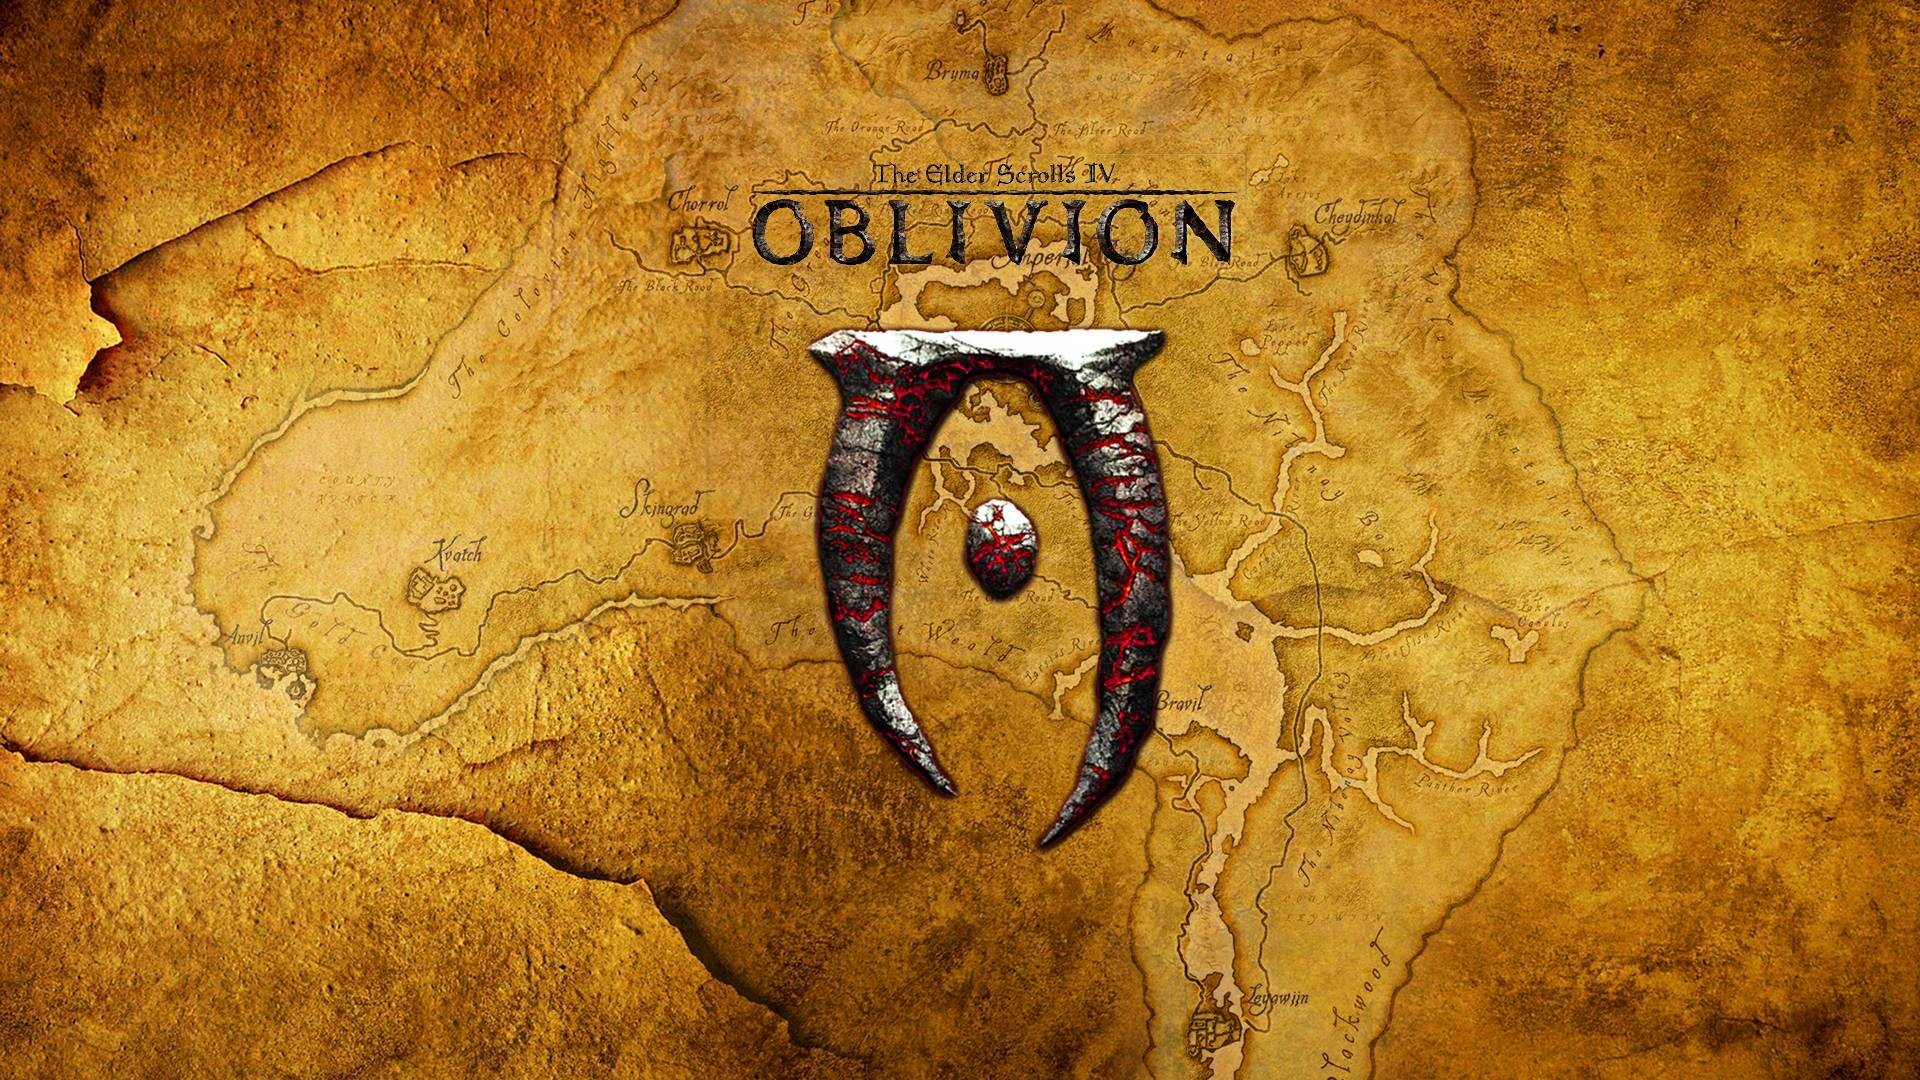 The Elder Scrolls IV: Oblivion High Quality Background on Wallpapers Vista